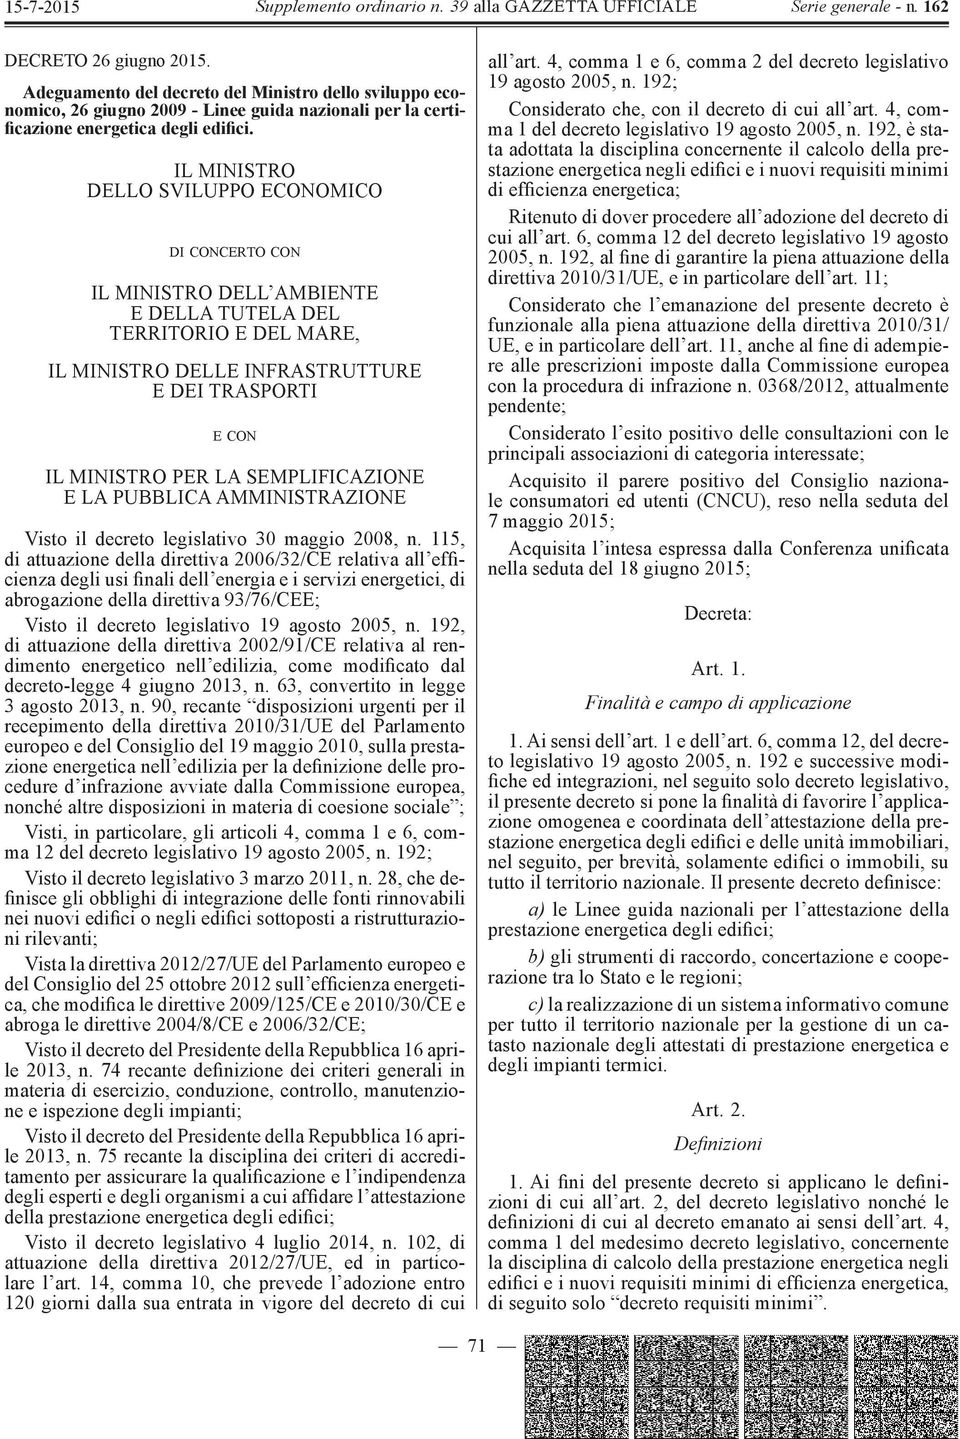 SEMPLIFICAZIONE E LA PUBBLICA AMMINISTRAZIONE Visto il decreto legislativo 30 maggio 2008, n.